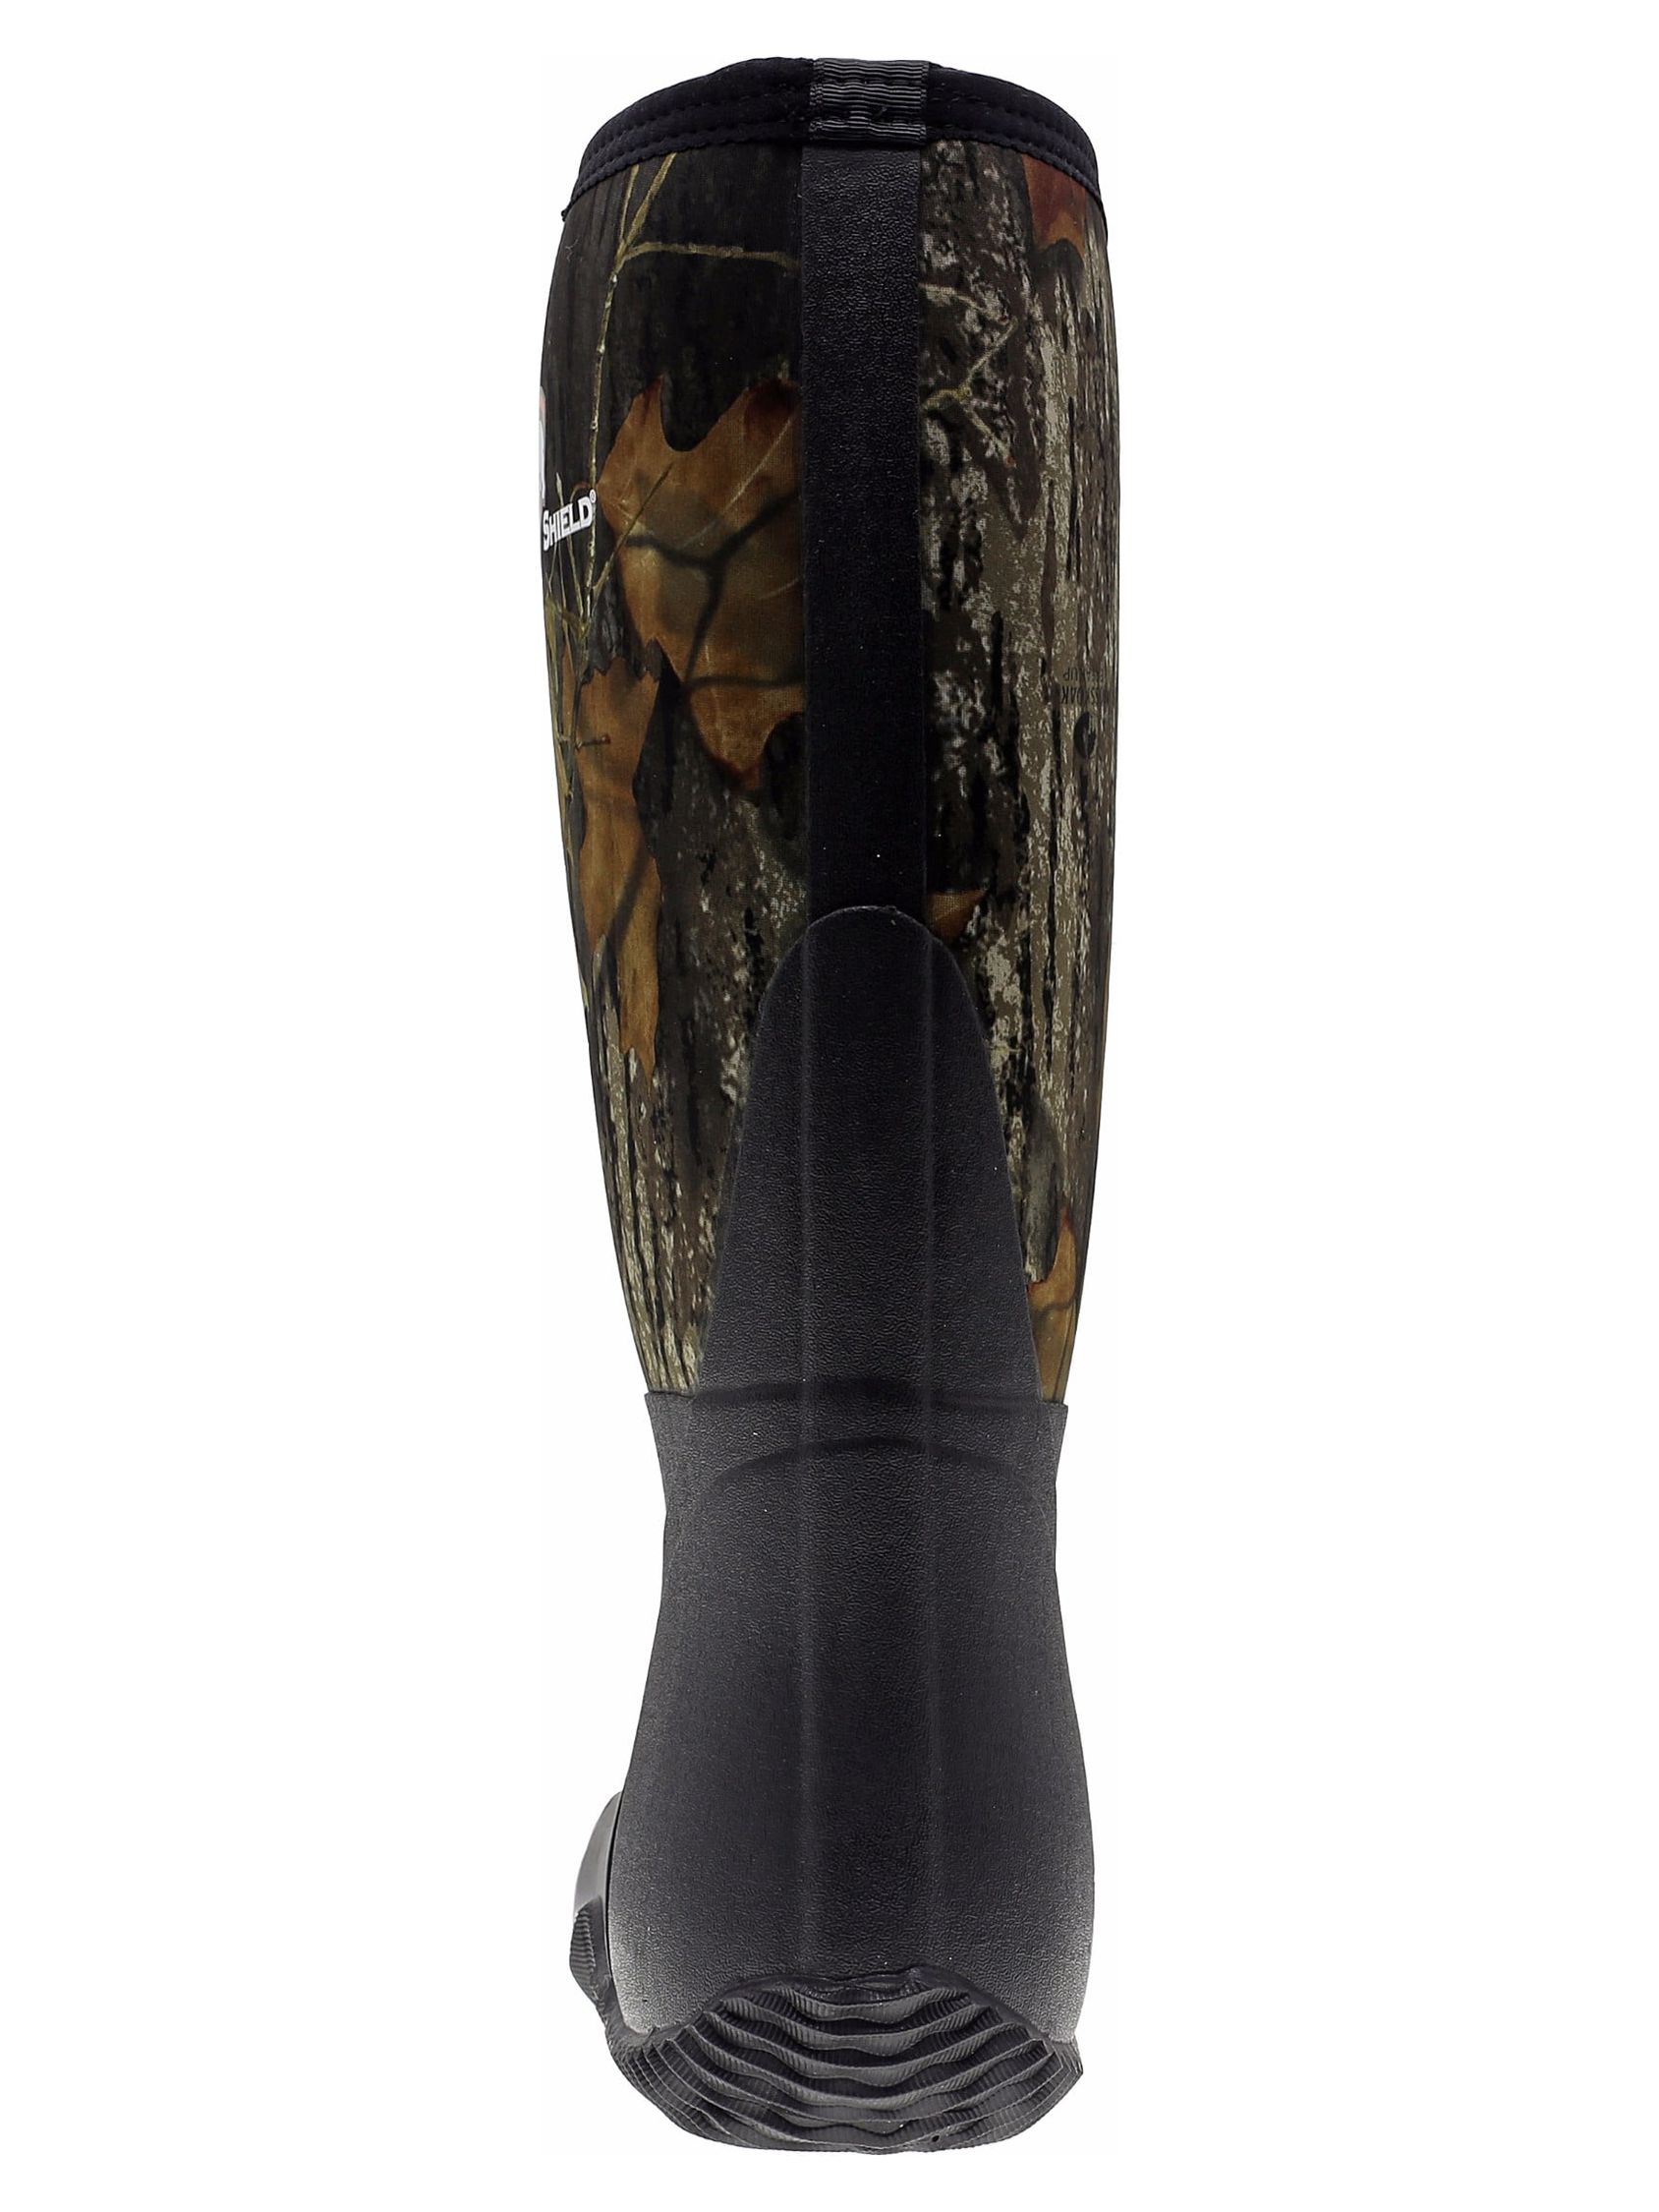 ArcticShield Men's Waterproof Durable Insulated Rubber Neoprene Outdoor Boots - image 5 of 6